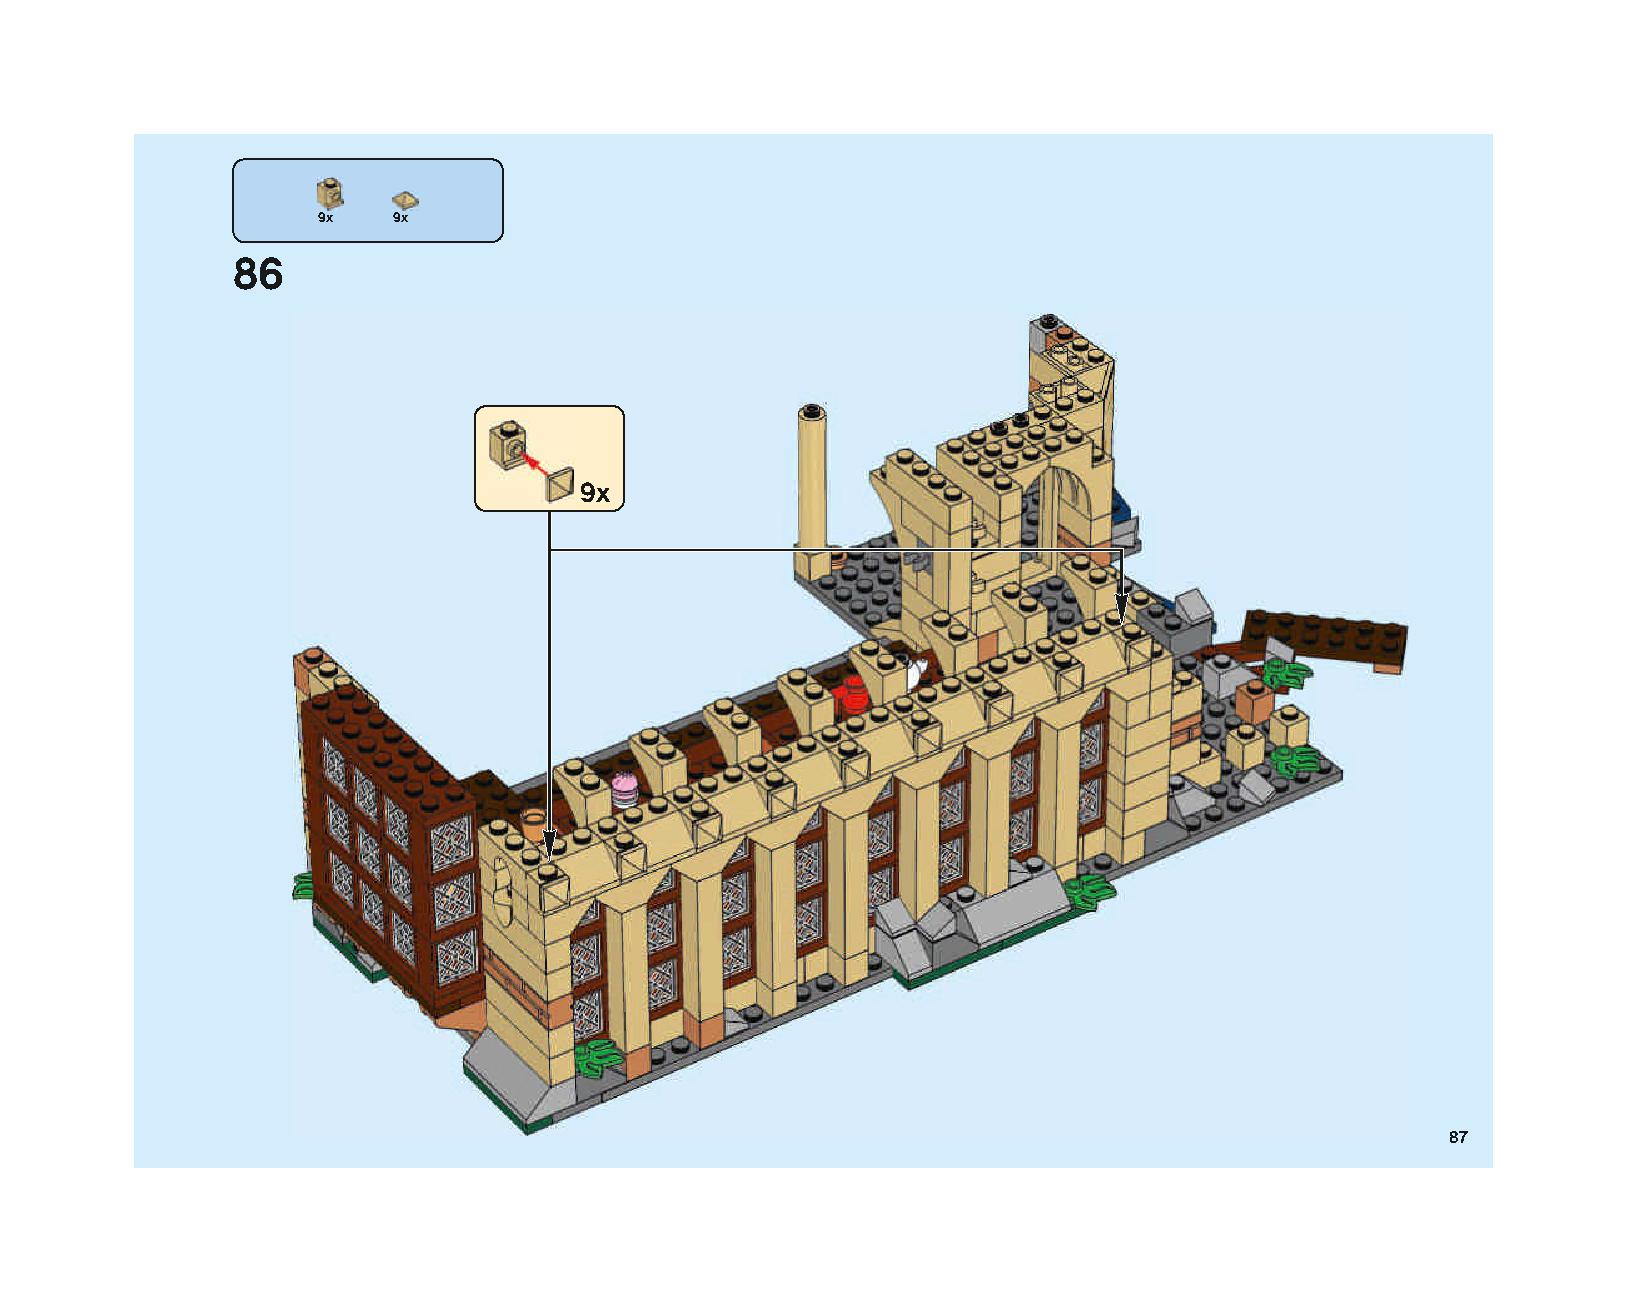 ホグワーツの大広間 75954 レゴの商品情報 レゴの説明書・組立方法 87 page